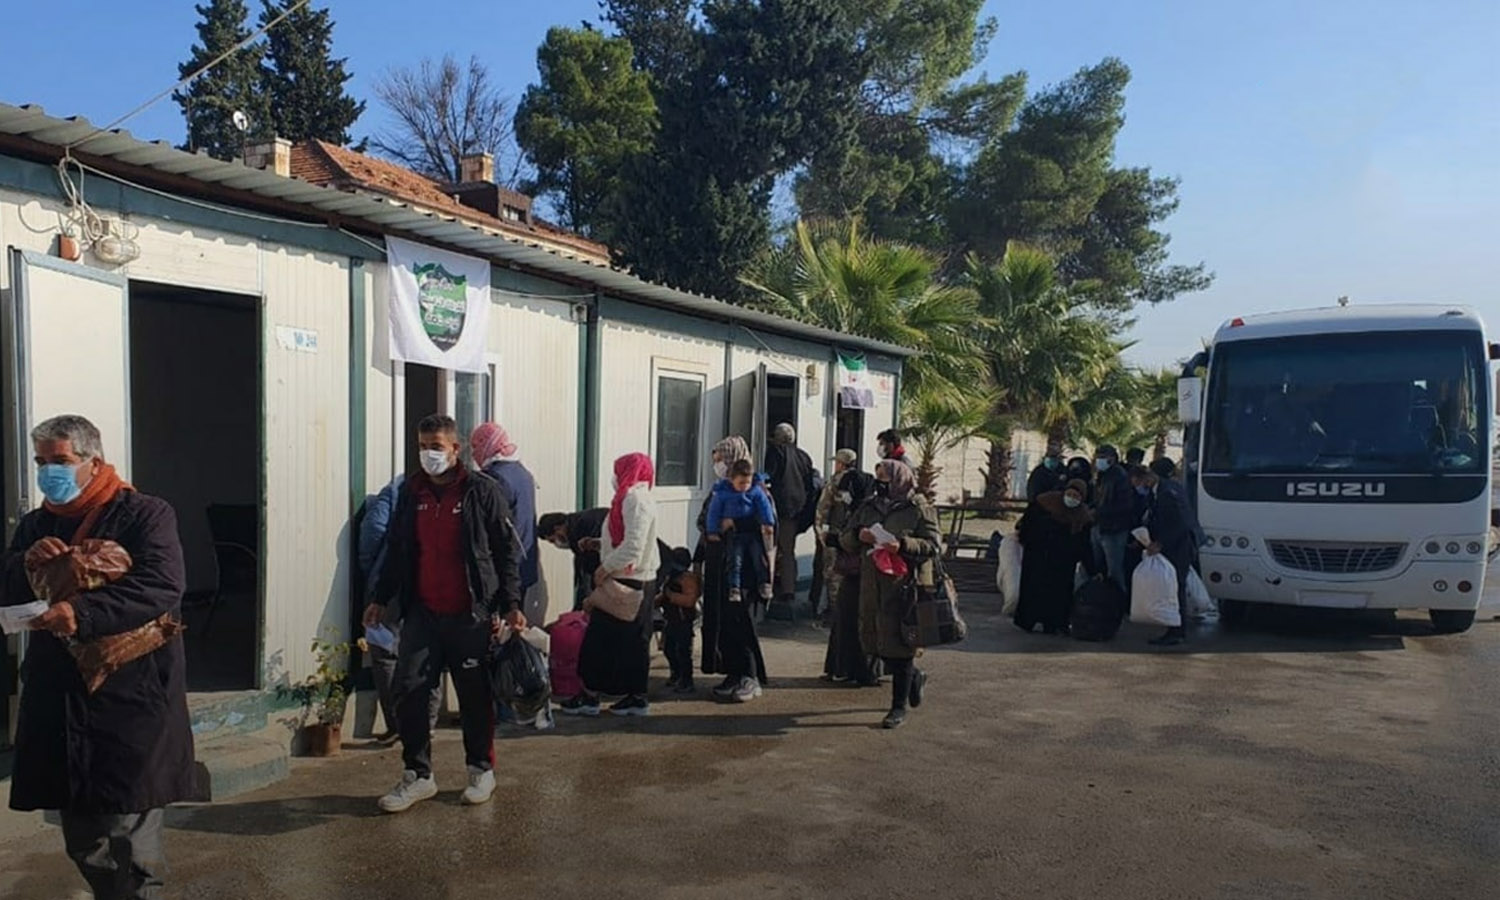 مدنيون سوريون خلال دخولهم إلى تركيا بعد إجازة قضوها في سوريا- 11 كانون الأول 2020 (معبر جرابلس/ فيس بوك)